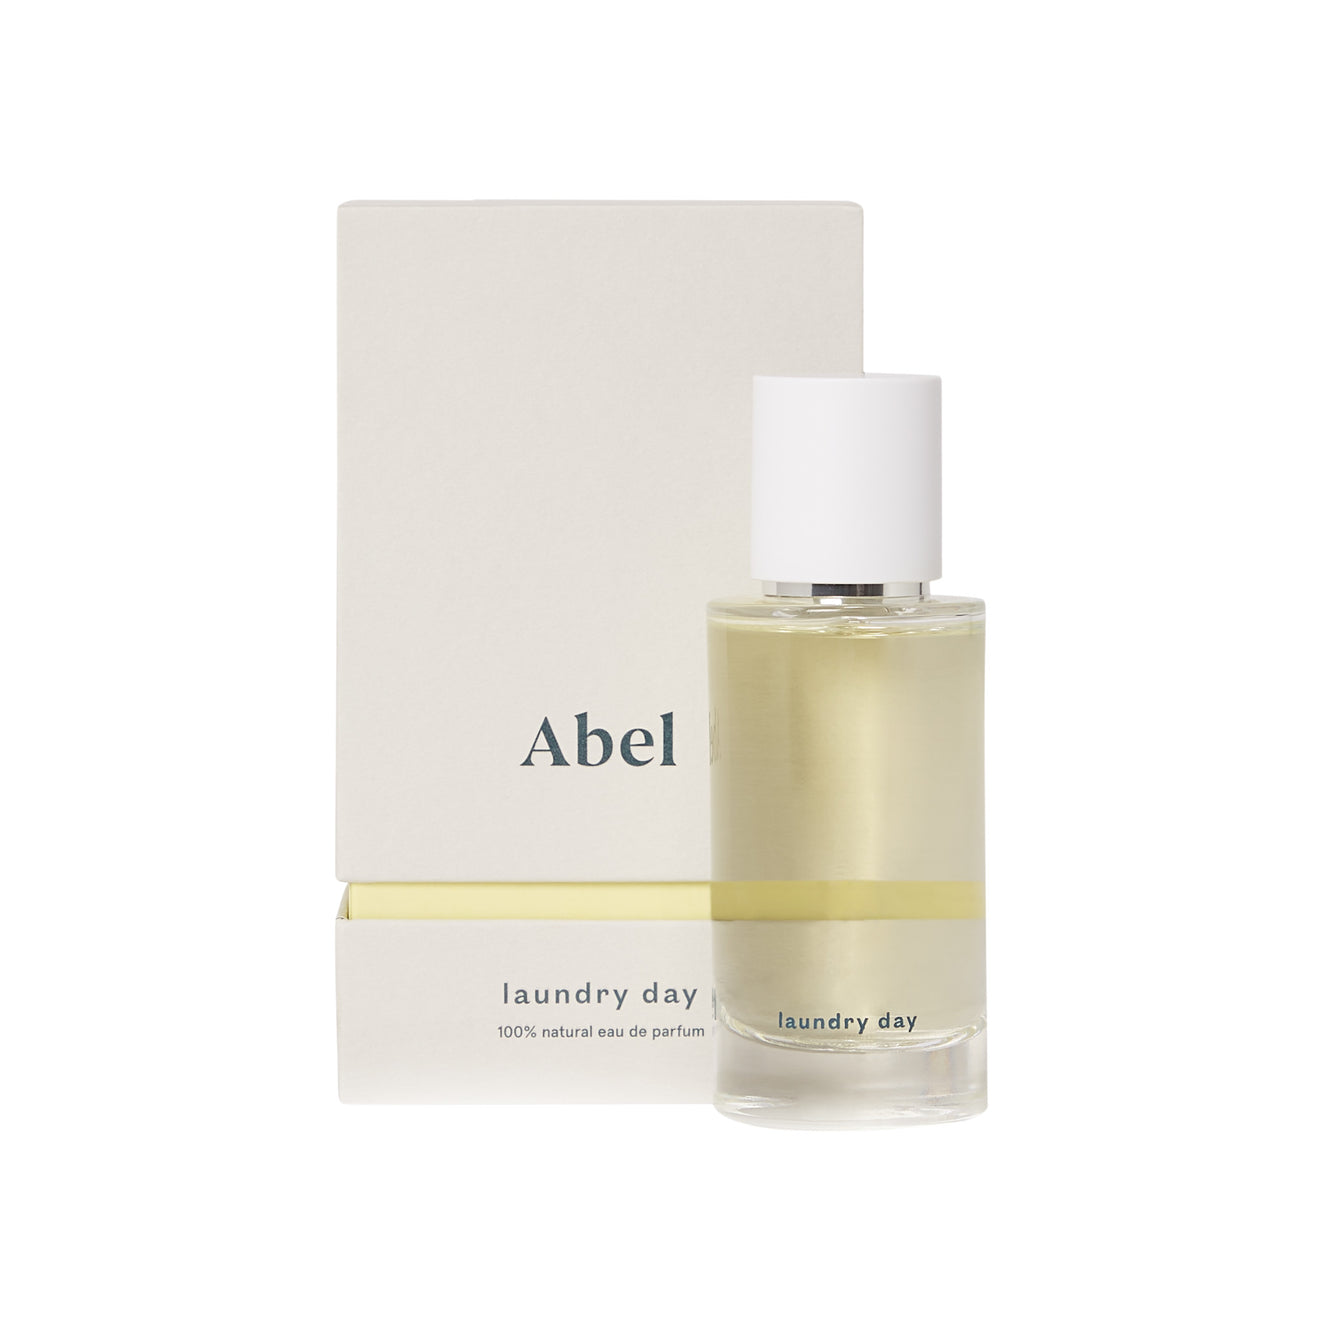 Abel Laundry Day Eau de Parfum Size variant: 1.69 oz main image.